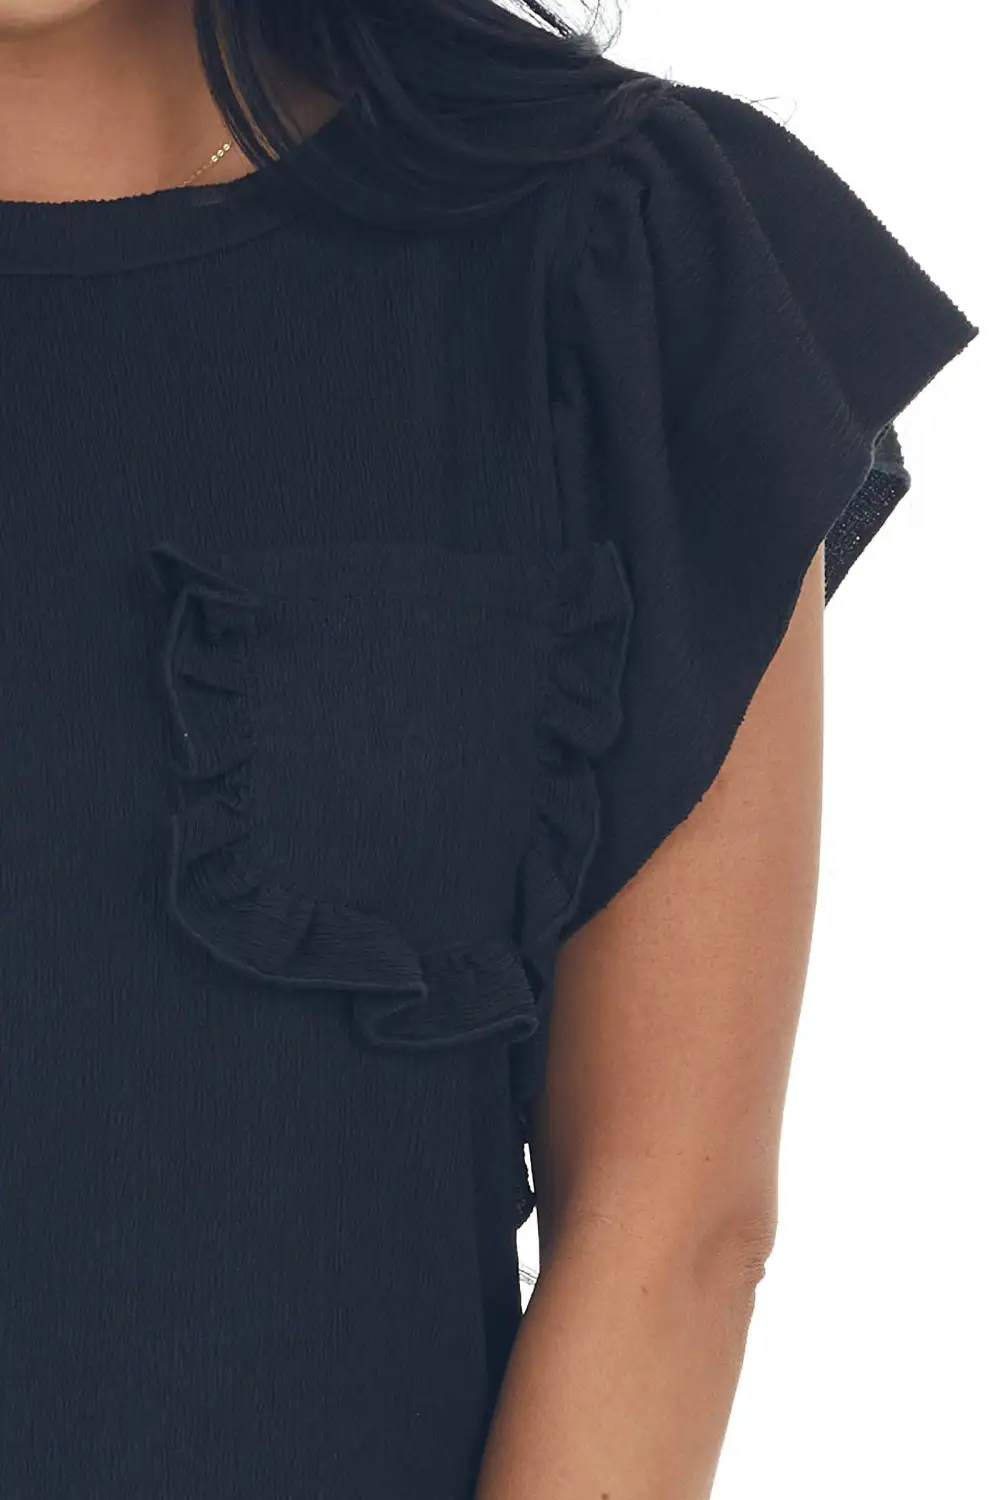 Black Crepe Knit Flutter Sleeve Top with Pocket